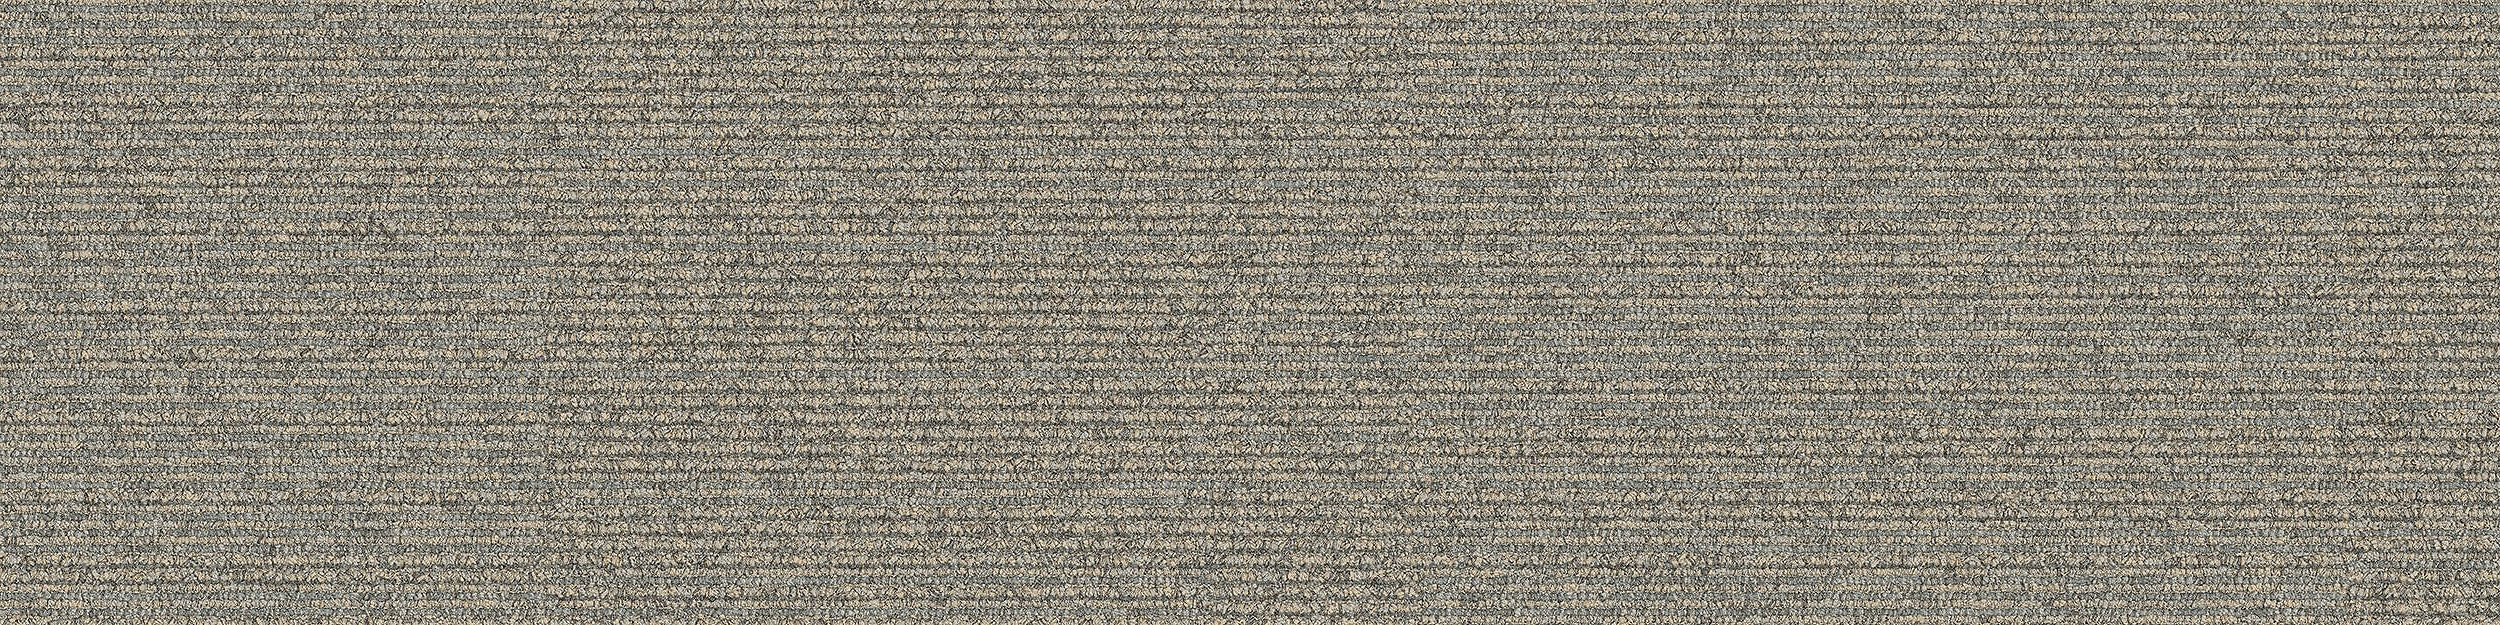 On Line Carpet Tile In Pigeon número de imagen 13